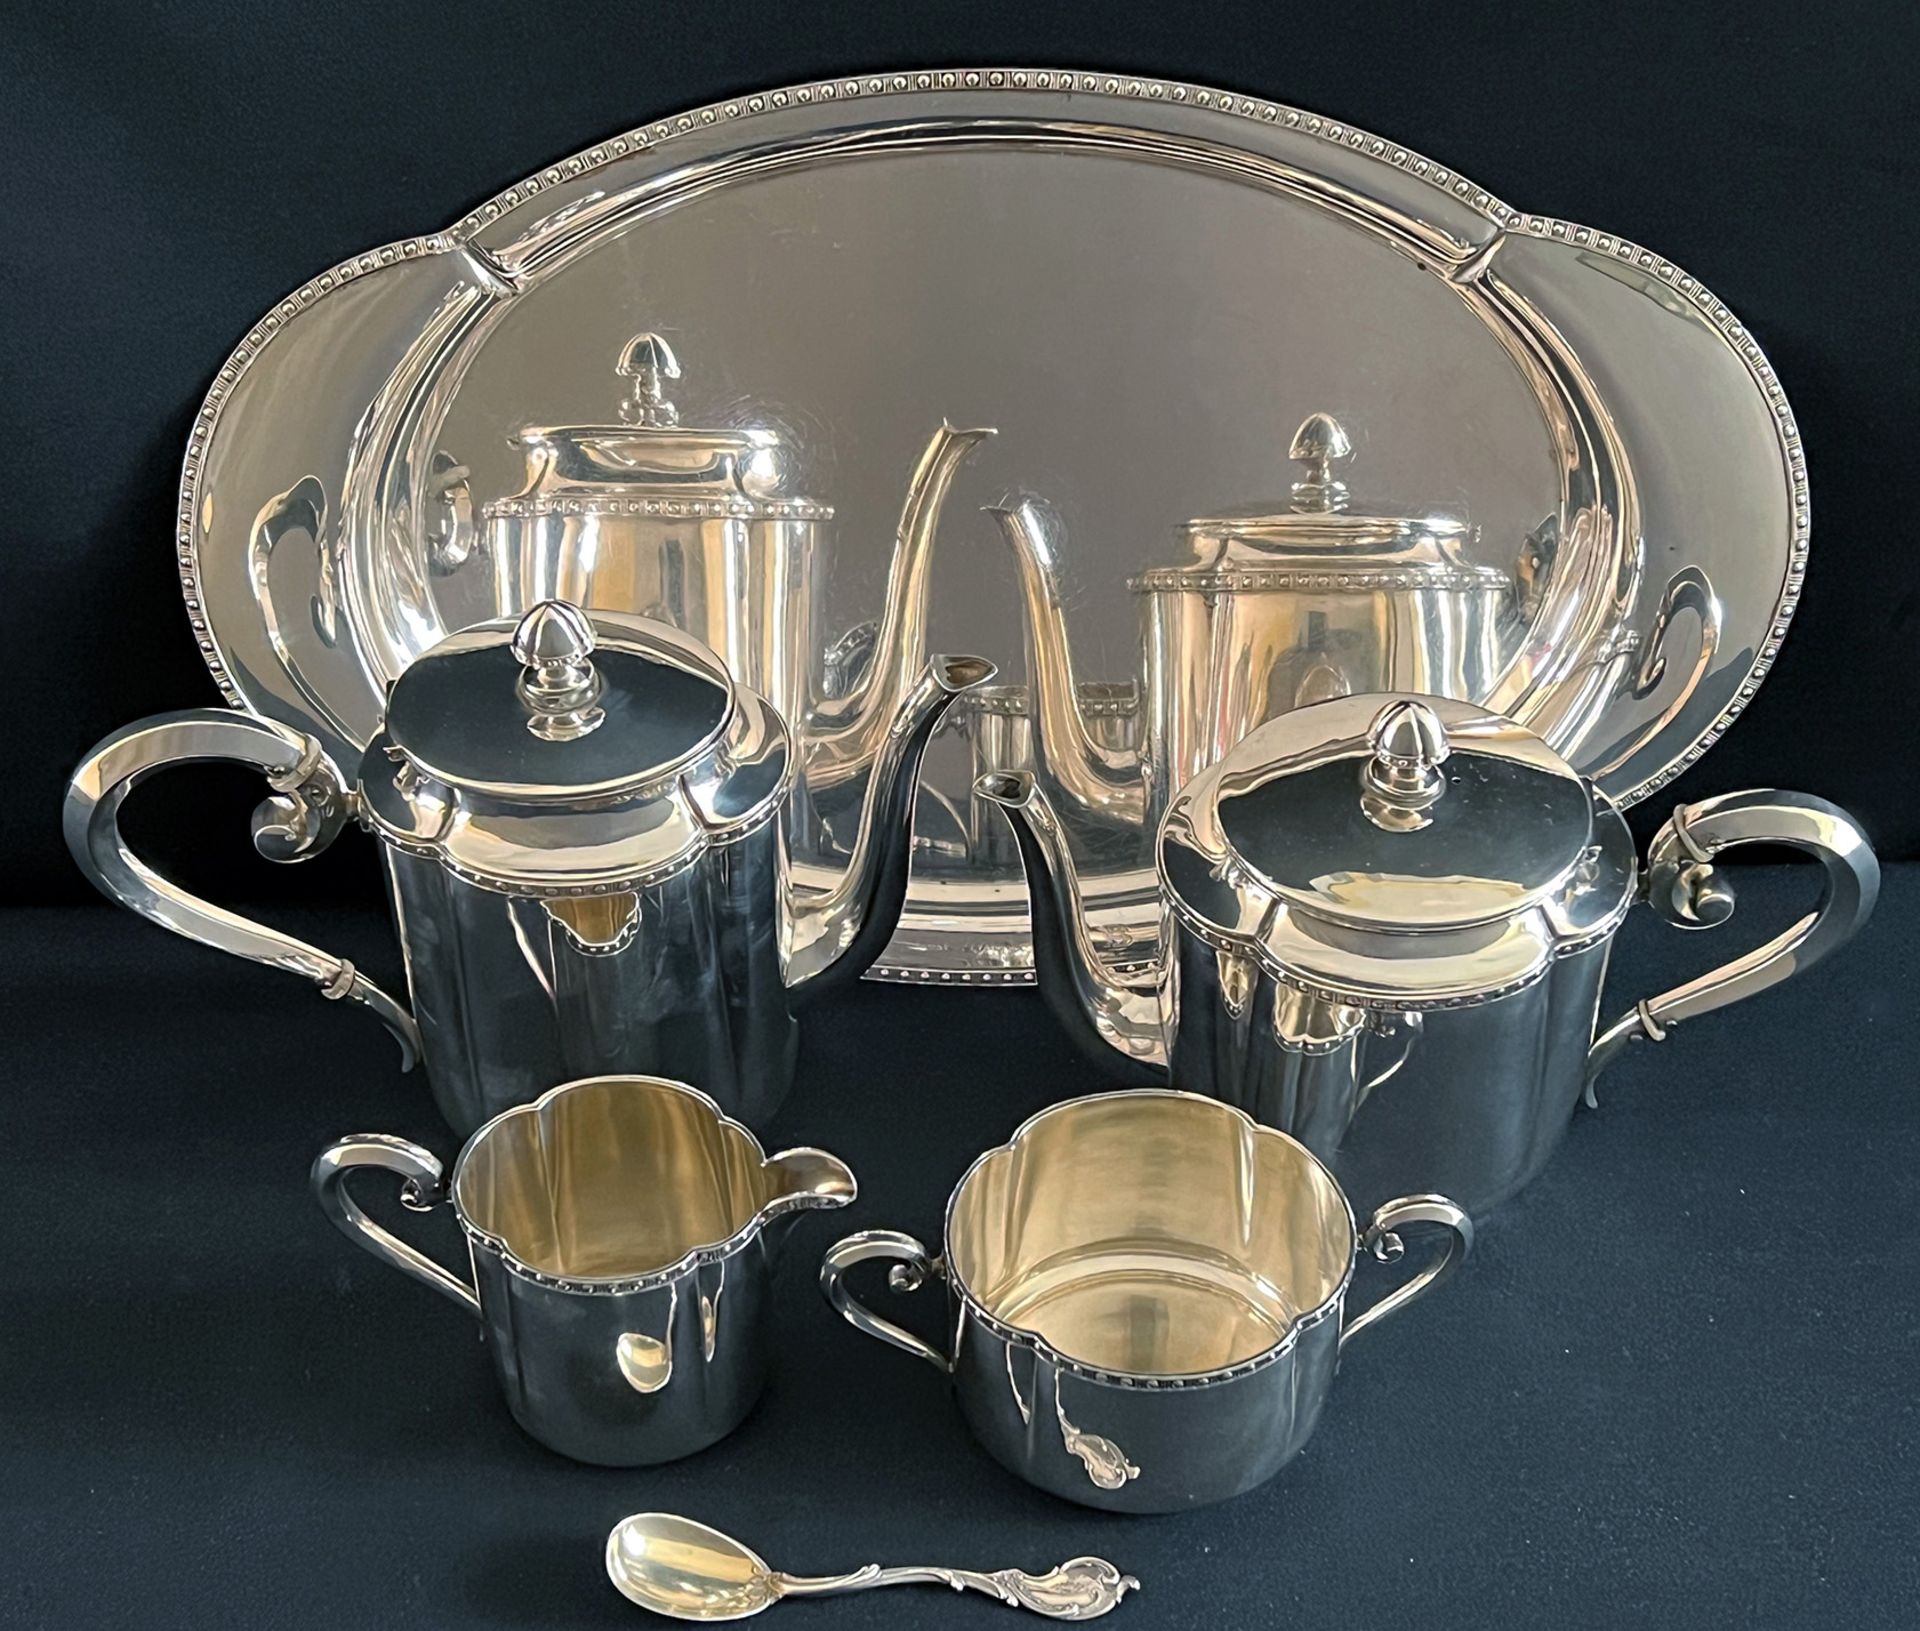 Kaffee- und Teeset, 800er Silber, ca. 1920. Kaffeekanne, Teeekanne, Milchkännchen, Zuckerdose und